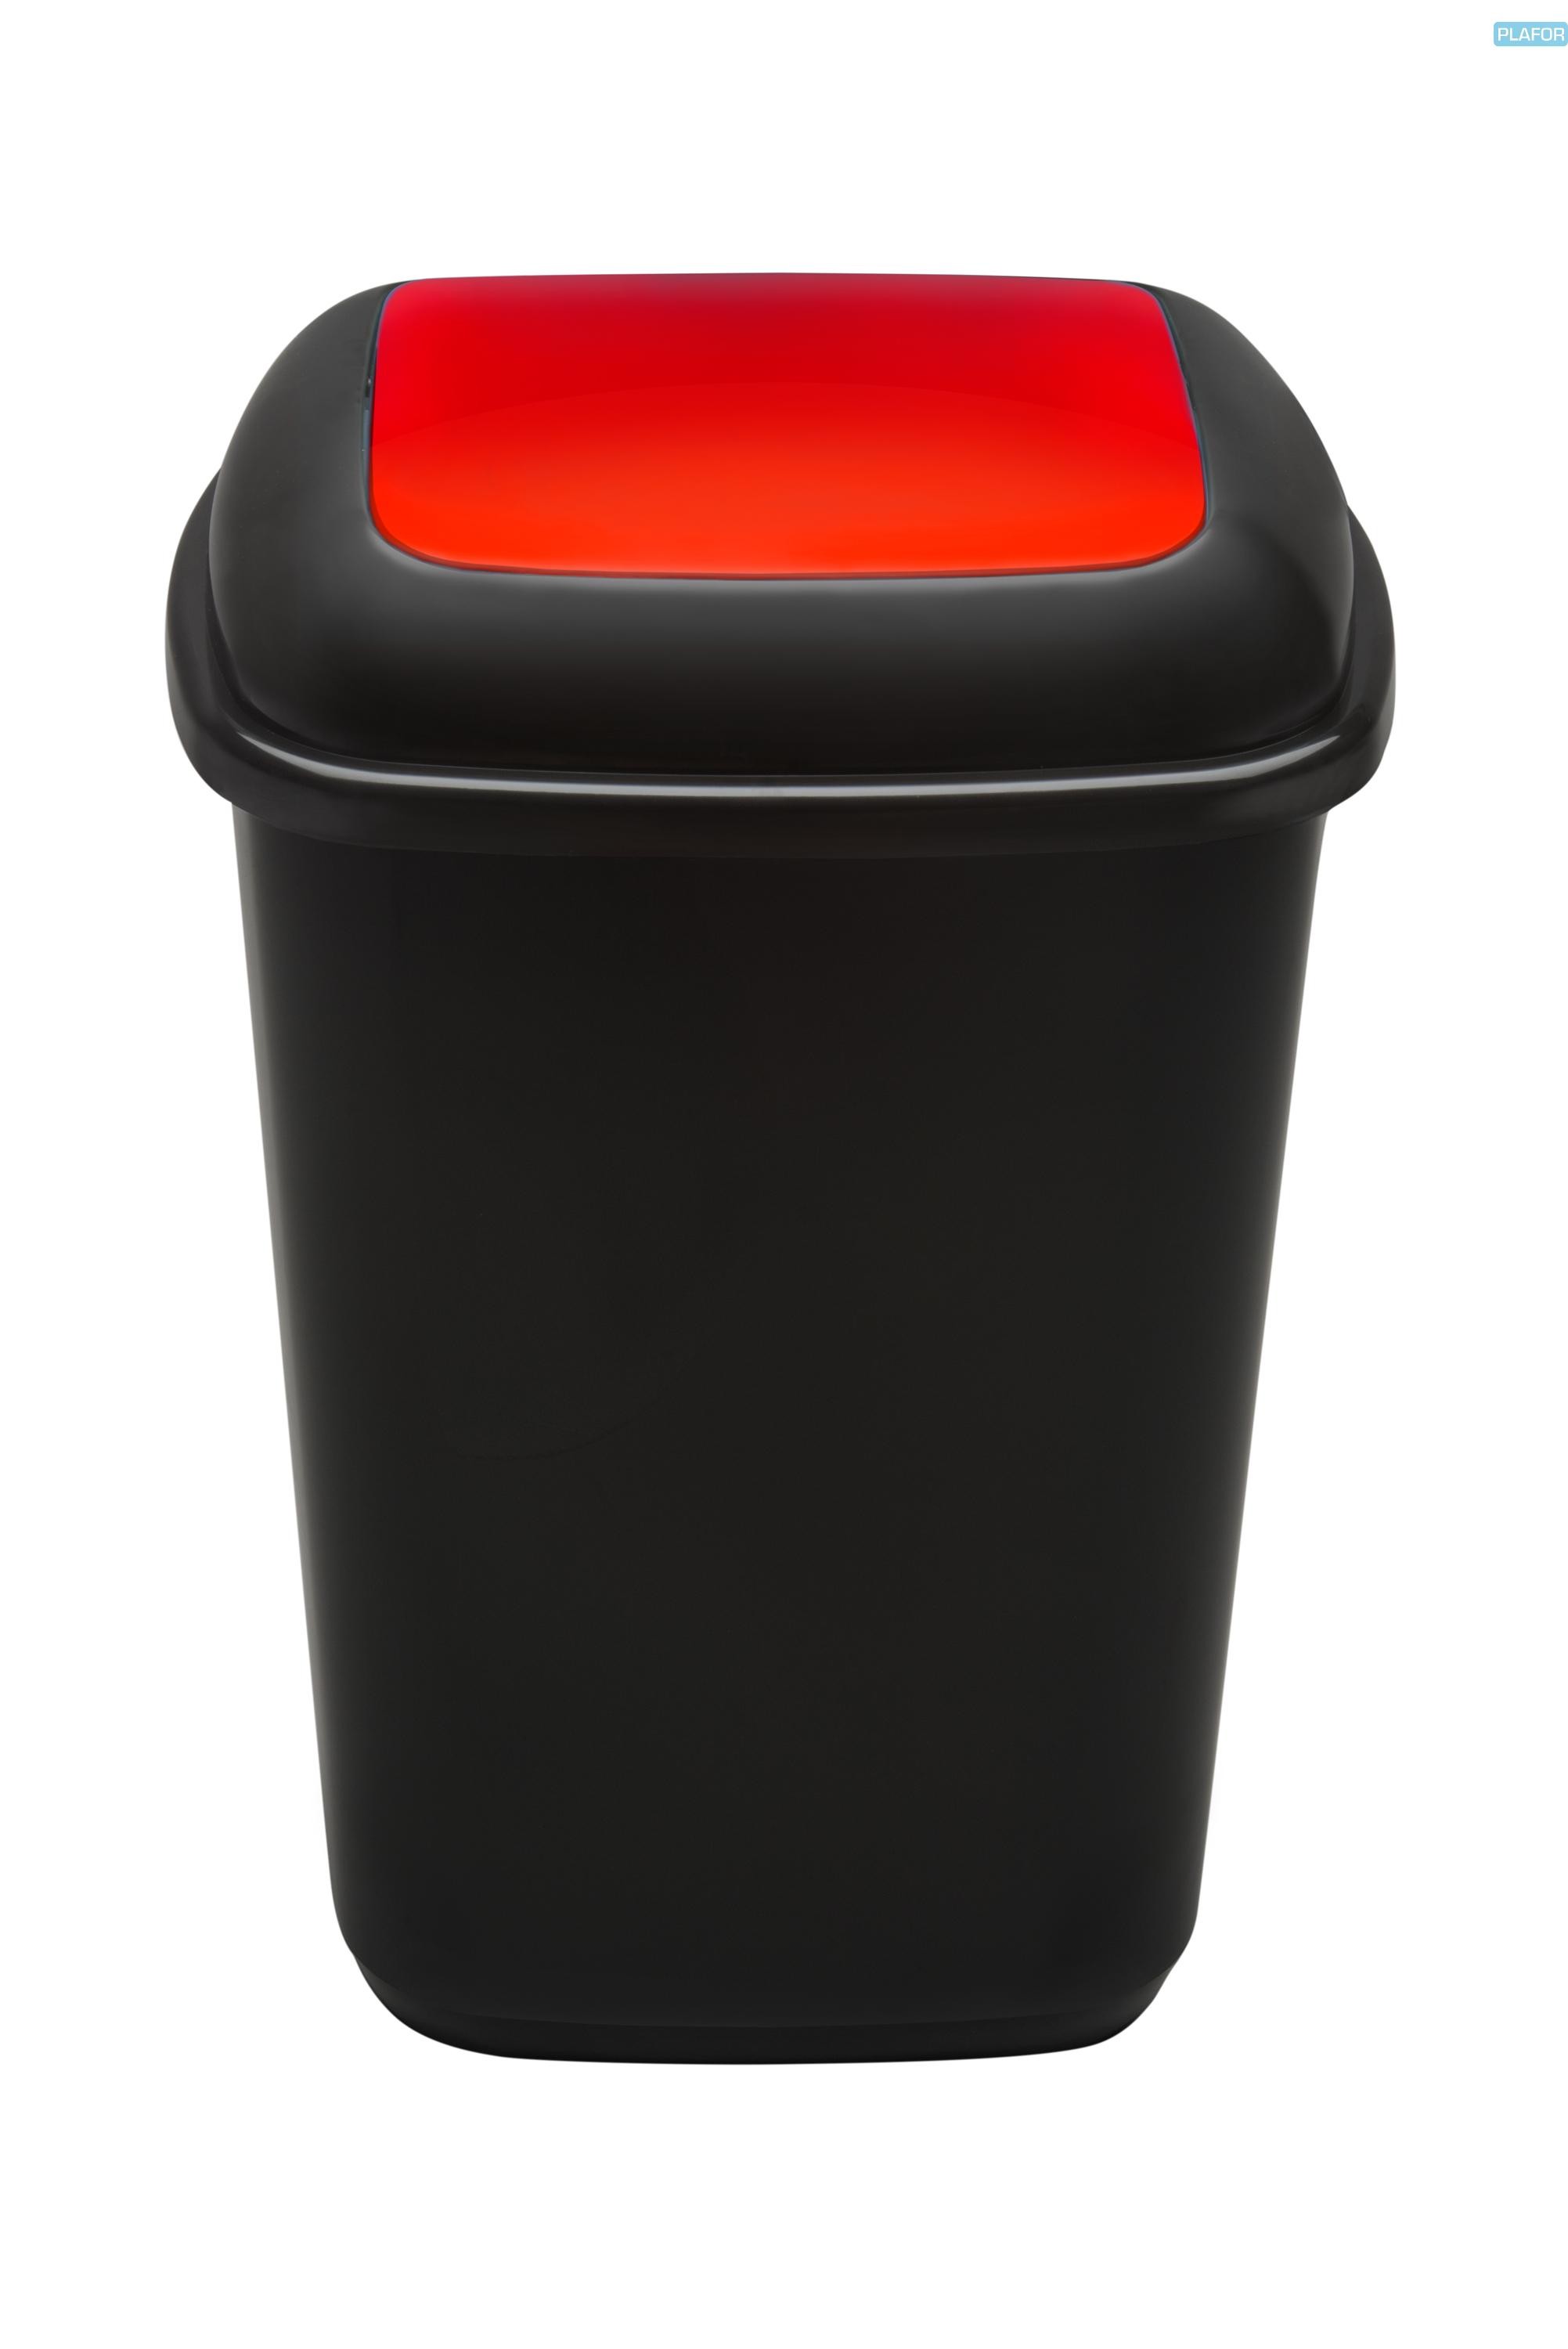 Cos plastic reciclare selectiva, capacitate 90l, PLAFOR Quatro - negru cu capac rosu - metal